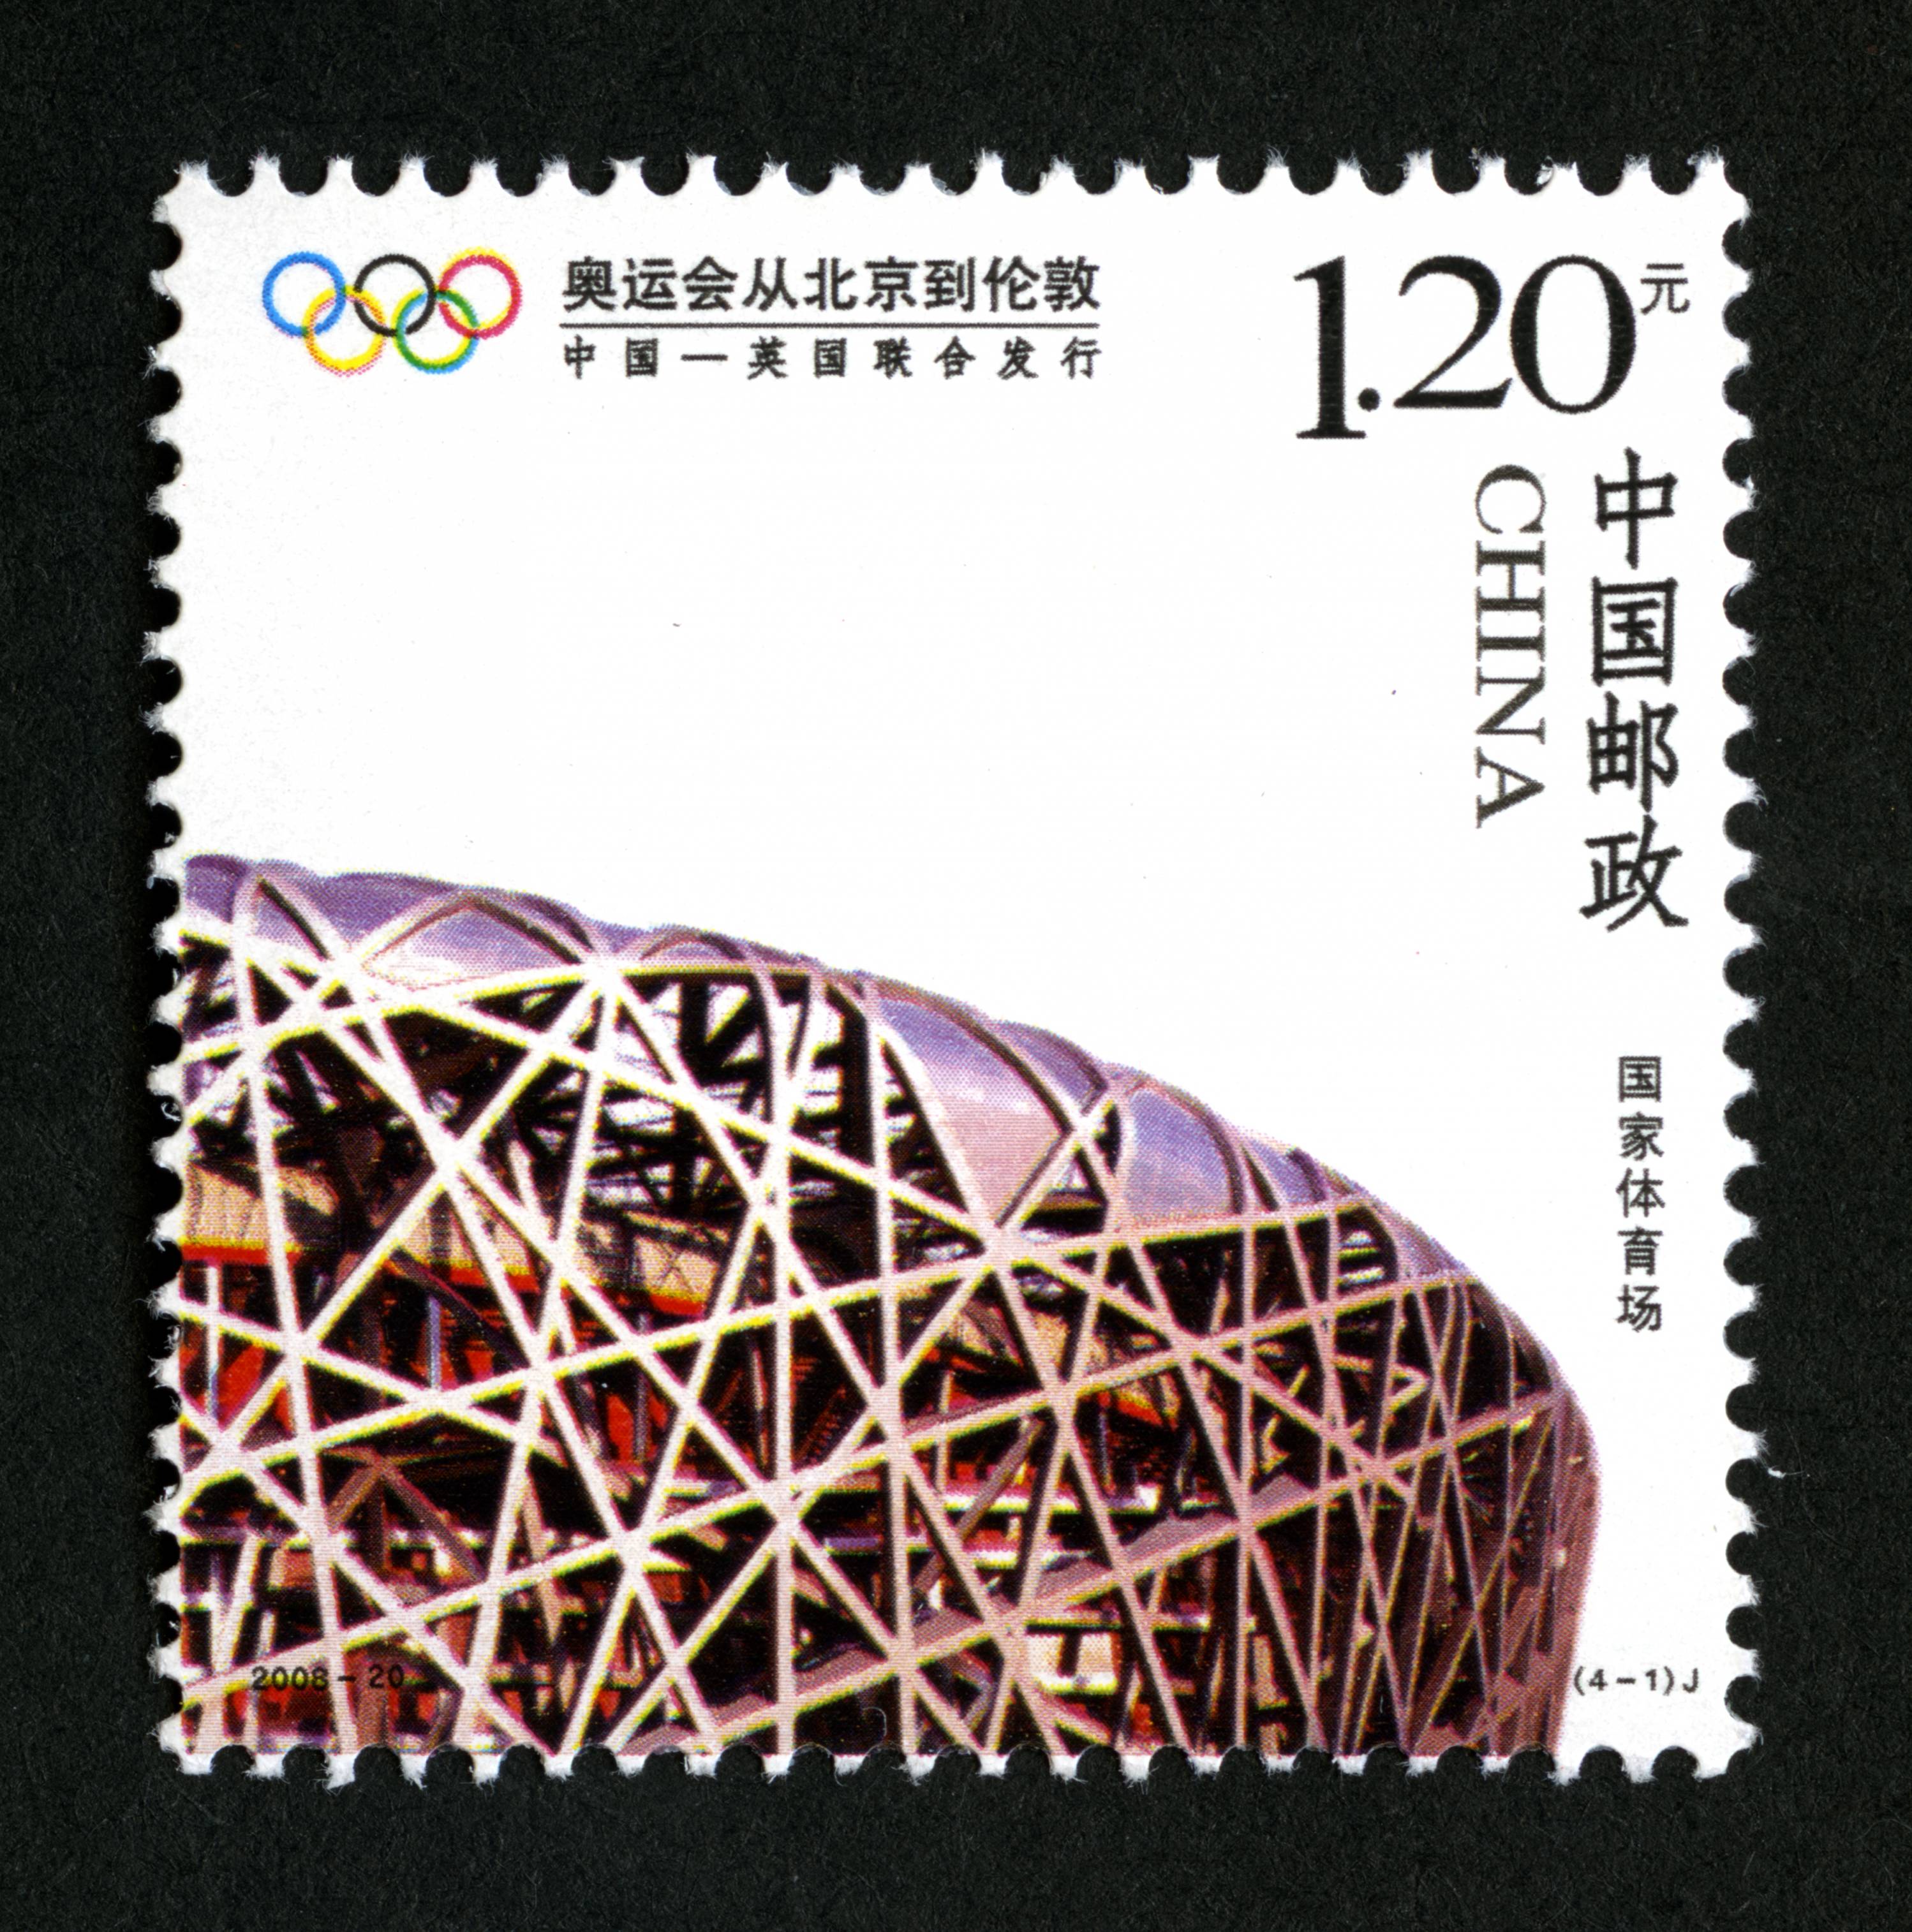 伦敦奥运立体金银邮票图片